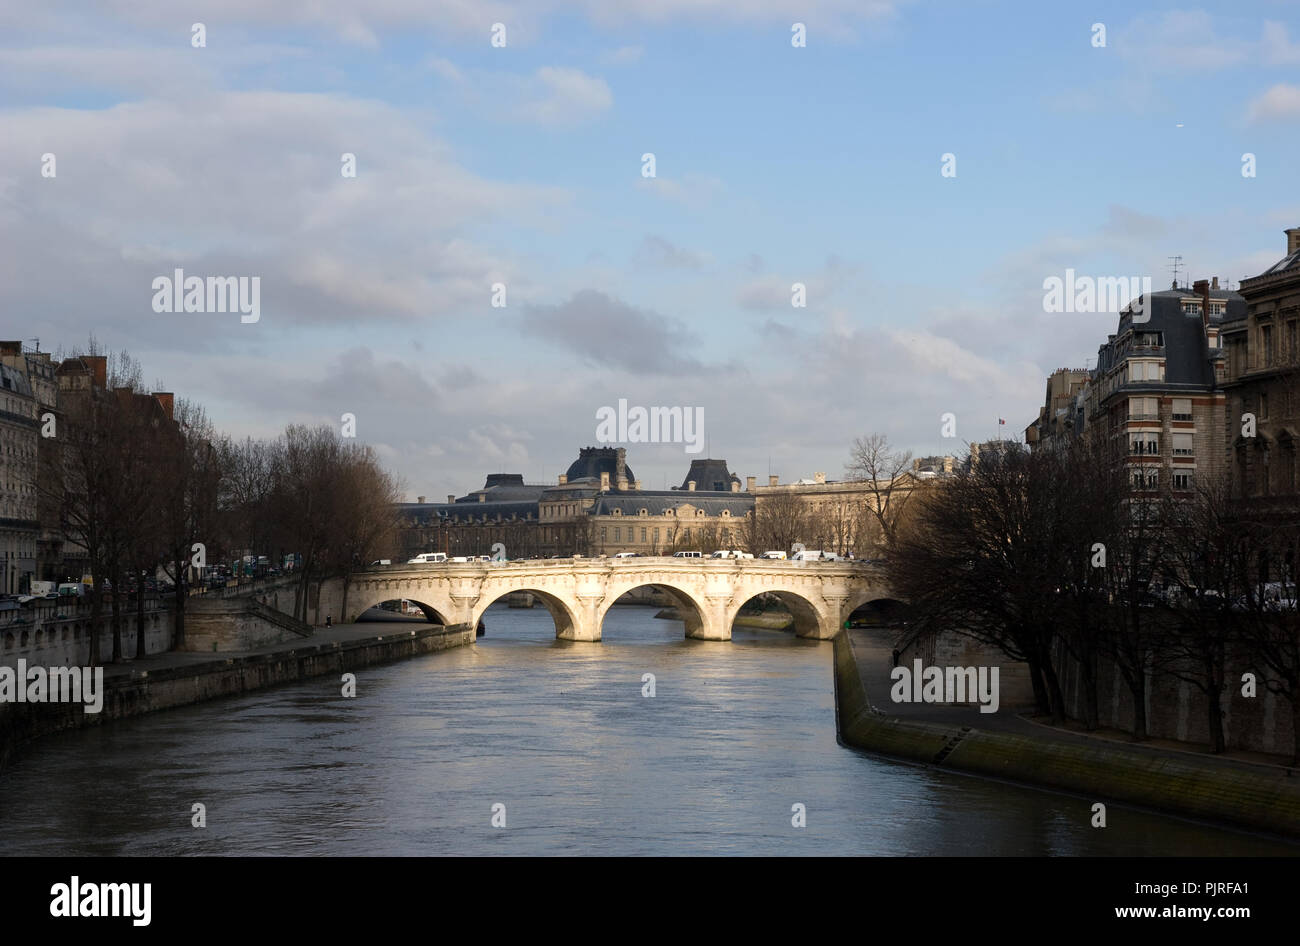 paris main landmarks Stock Photo - Alamy